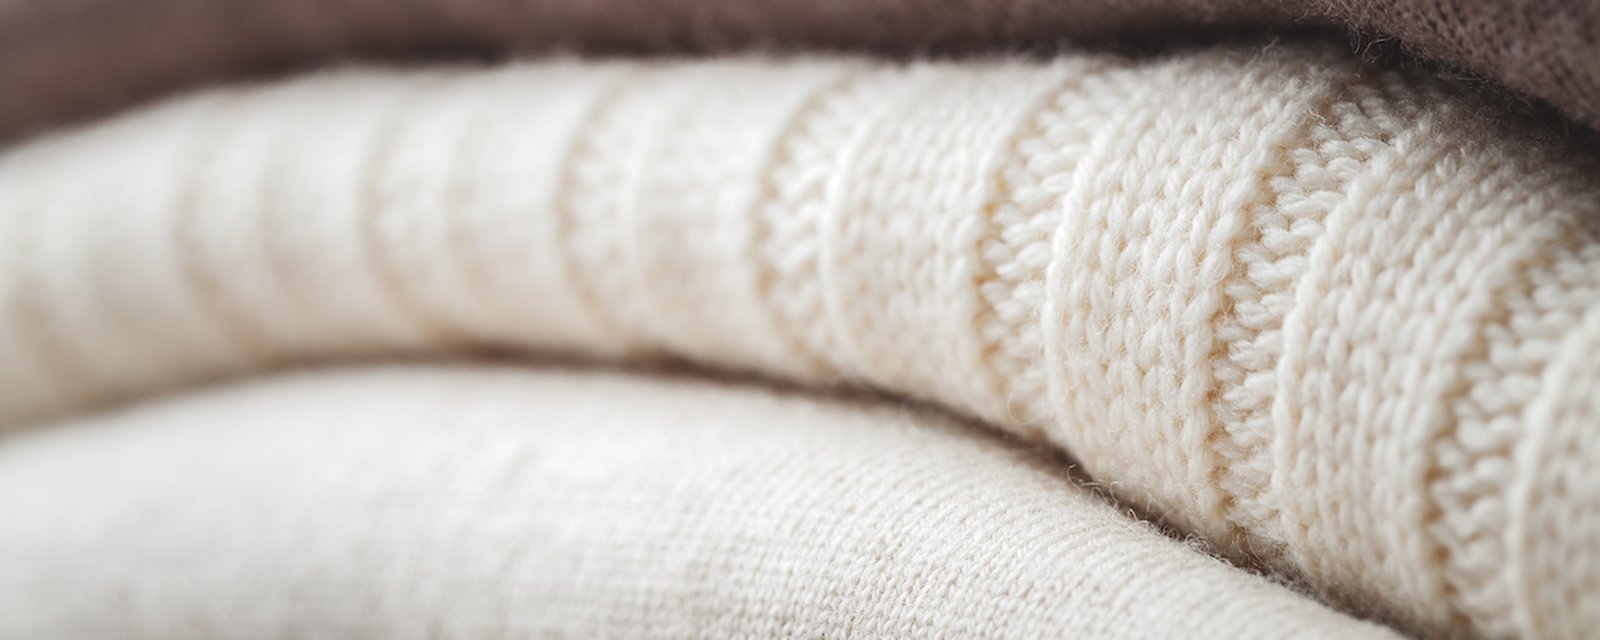 Découvrez la bonne manière de laver et entretenir vos beaux chandails de laine